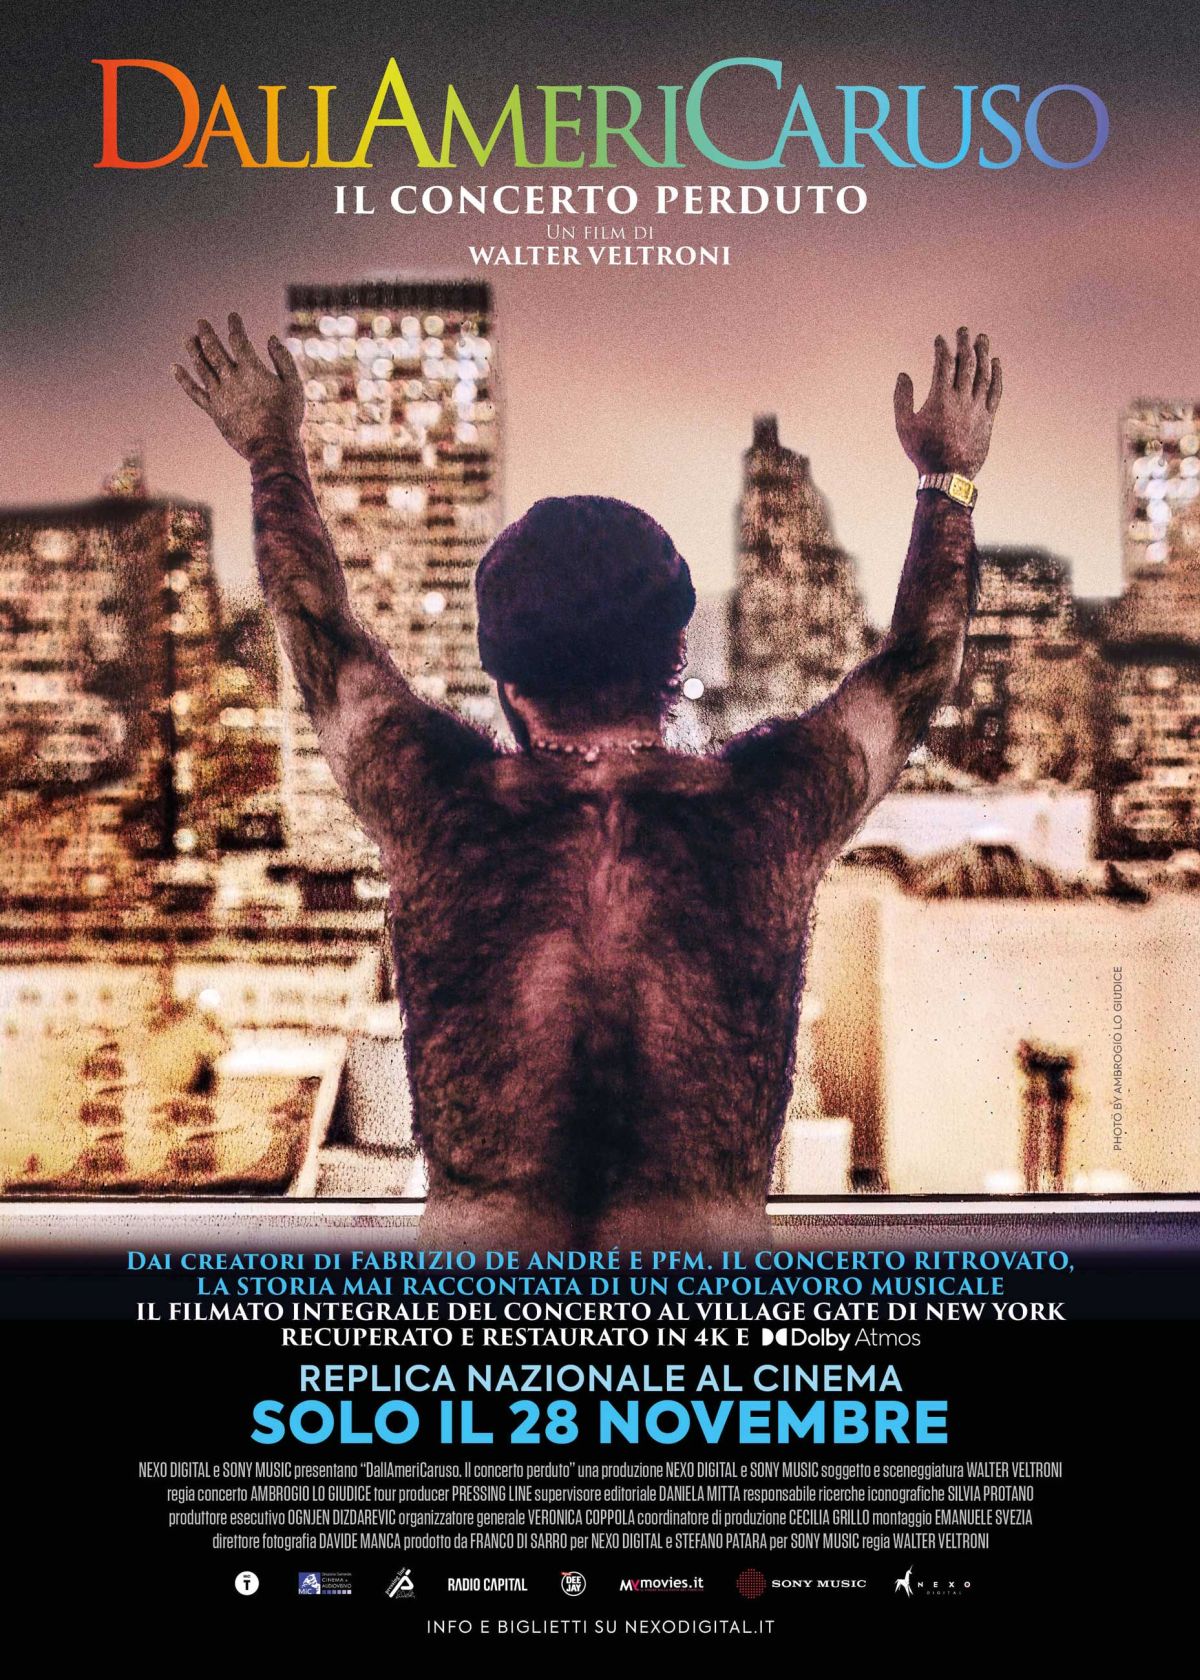 "DallAmeriCaruso. Il concerto perduto" torna al cinema solo il 28 novembre